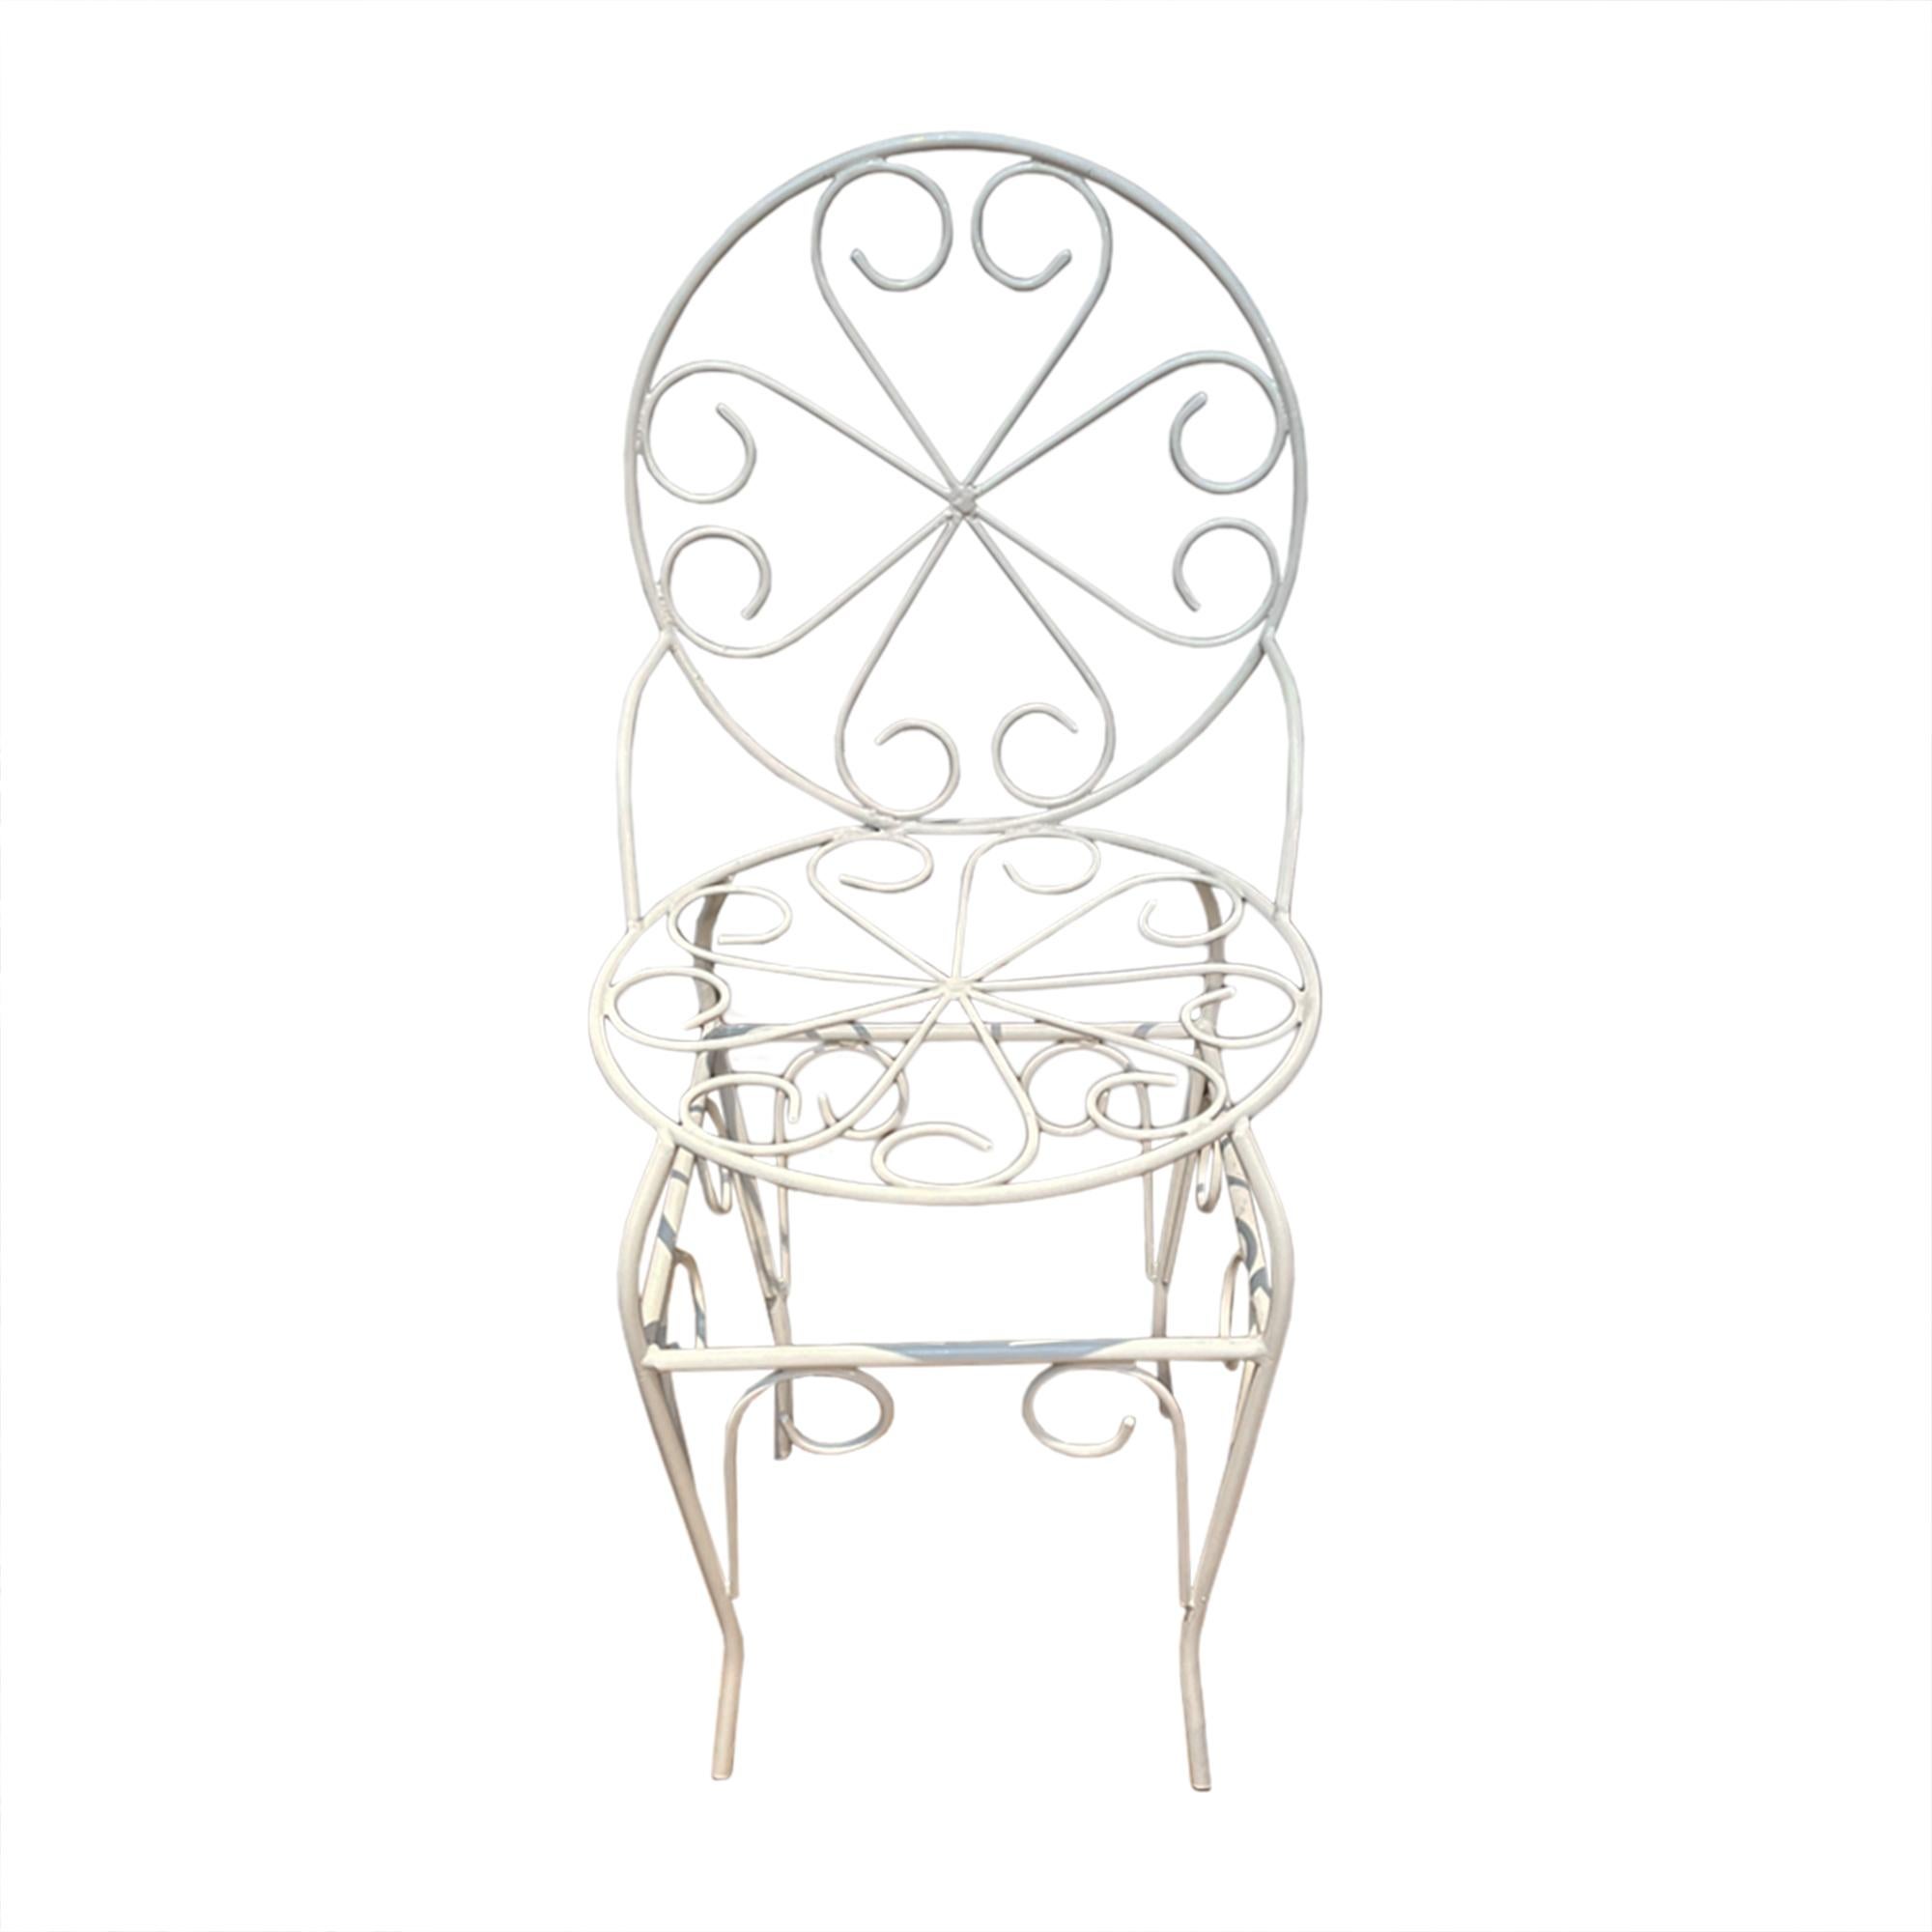 Ces chaises de jardin très attrayantes ont été fabriquées en France dans les années 1950.

Fabriqué en fer forgé avec un joli motif tourbillonnant. Toutes les chaises ont été entièrement restaurées - chacune d'entre elles a été grenaillée et